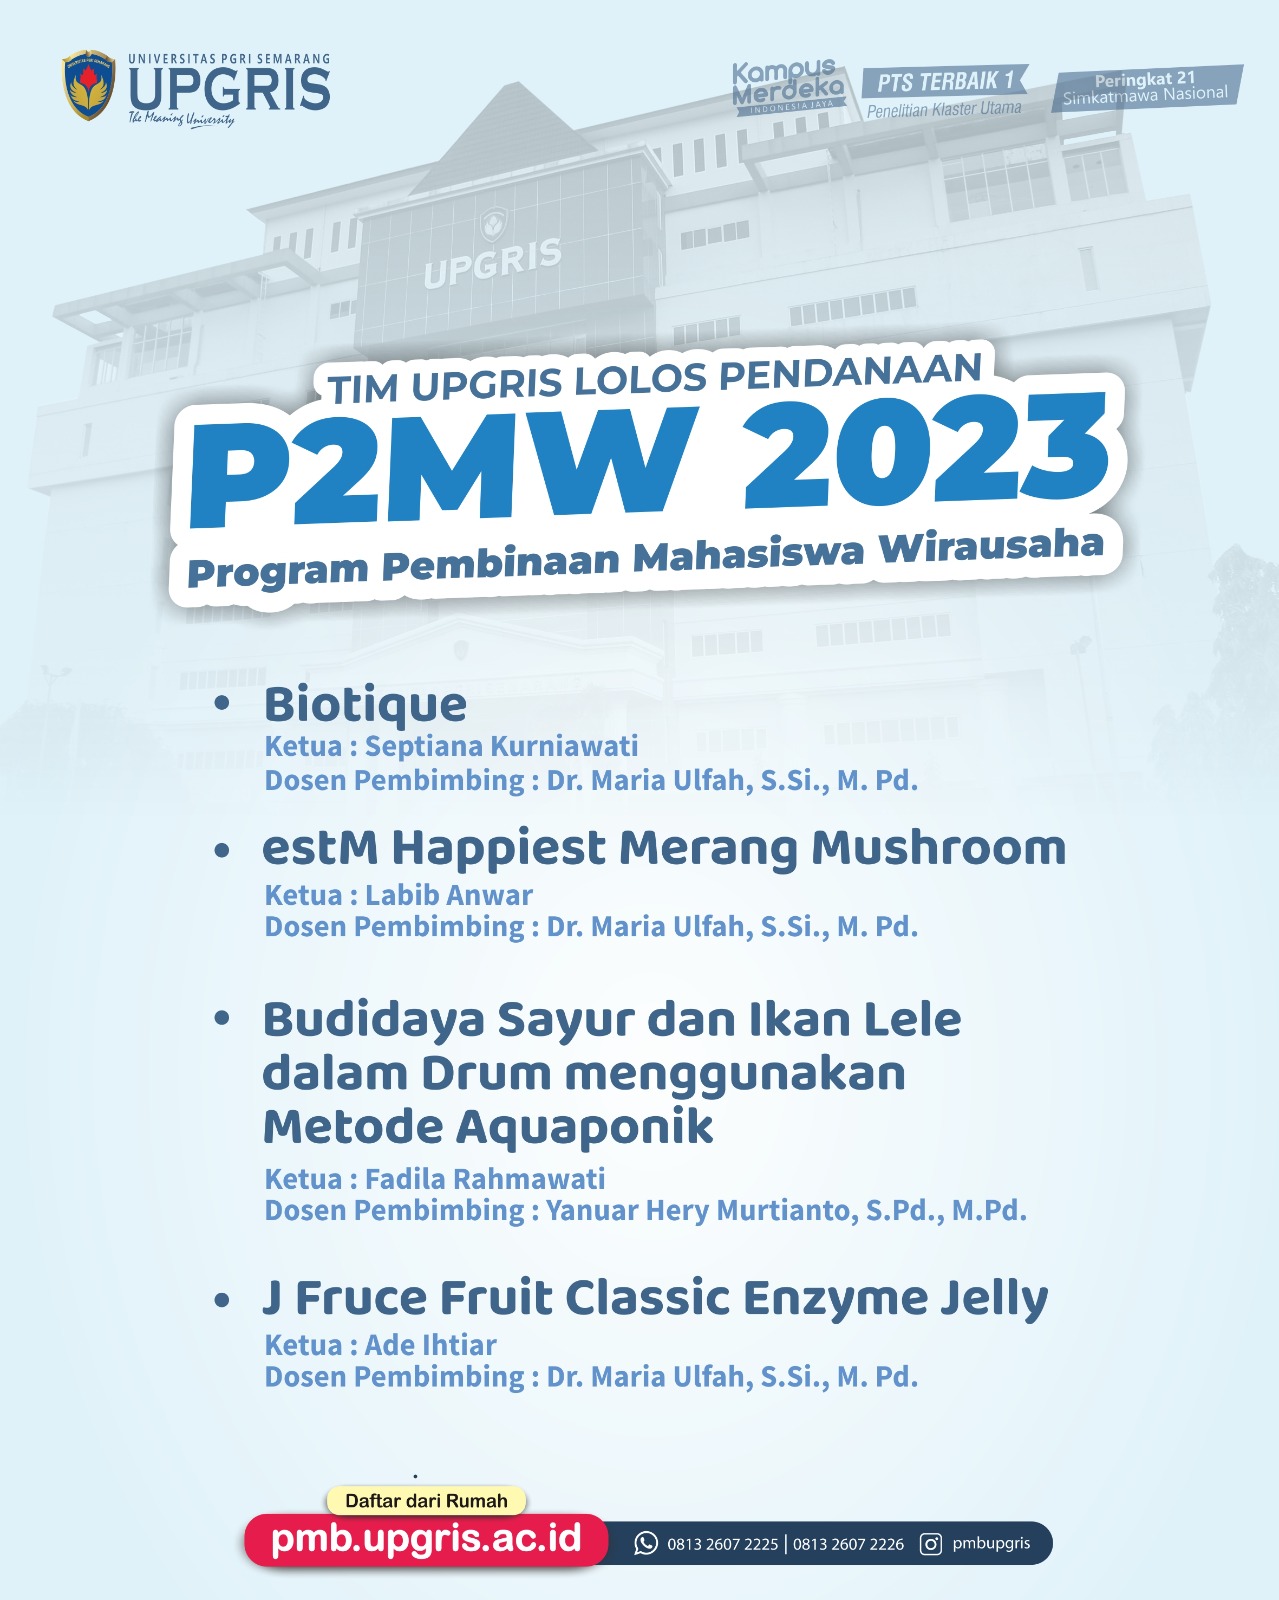 Selamat dan sukses 4 Tim Universitas PGRI Semarang Lolos Pendanaan P2MW 2023